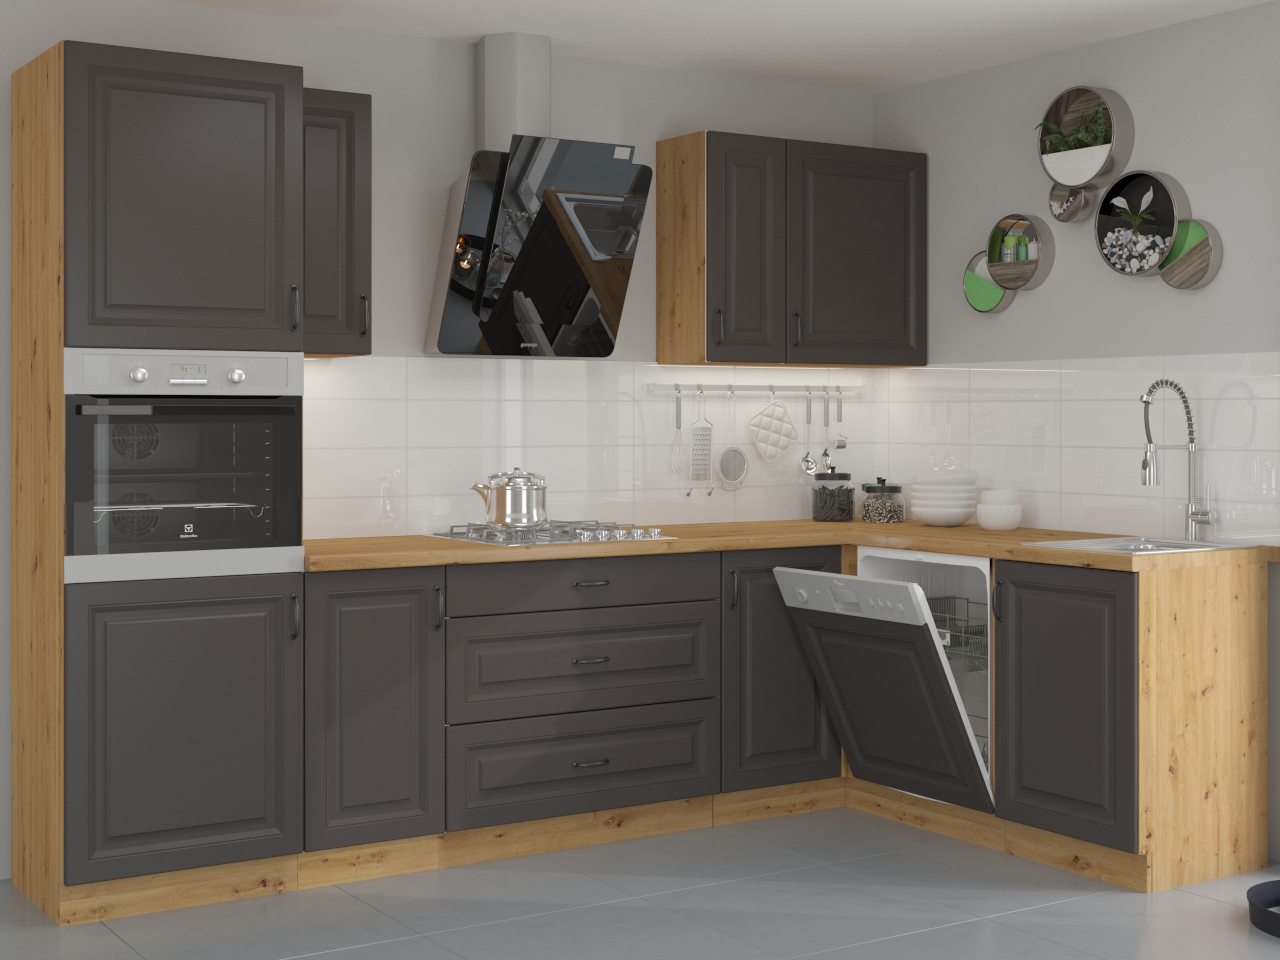 High kitchen cabinet 60 STILO ST35 artisan oak / graphite